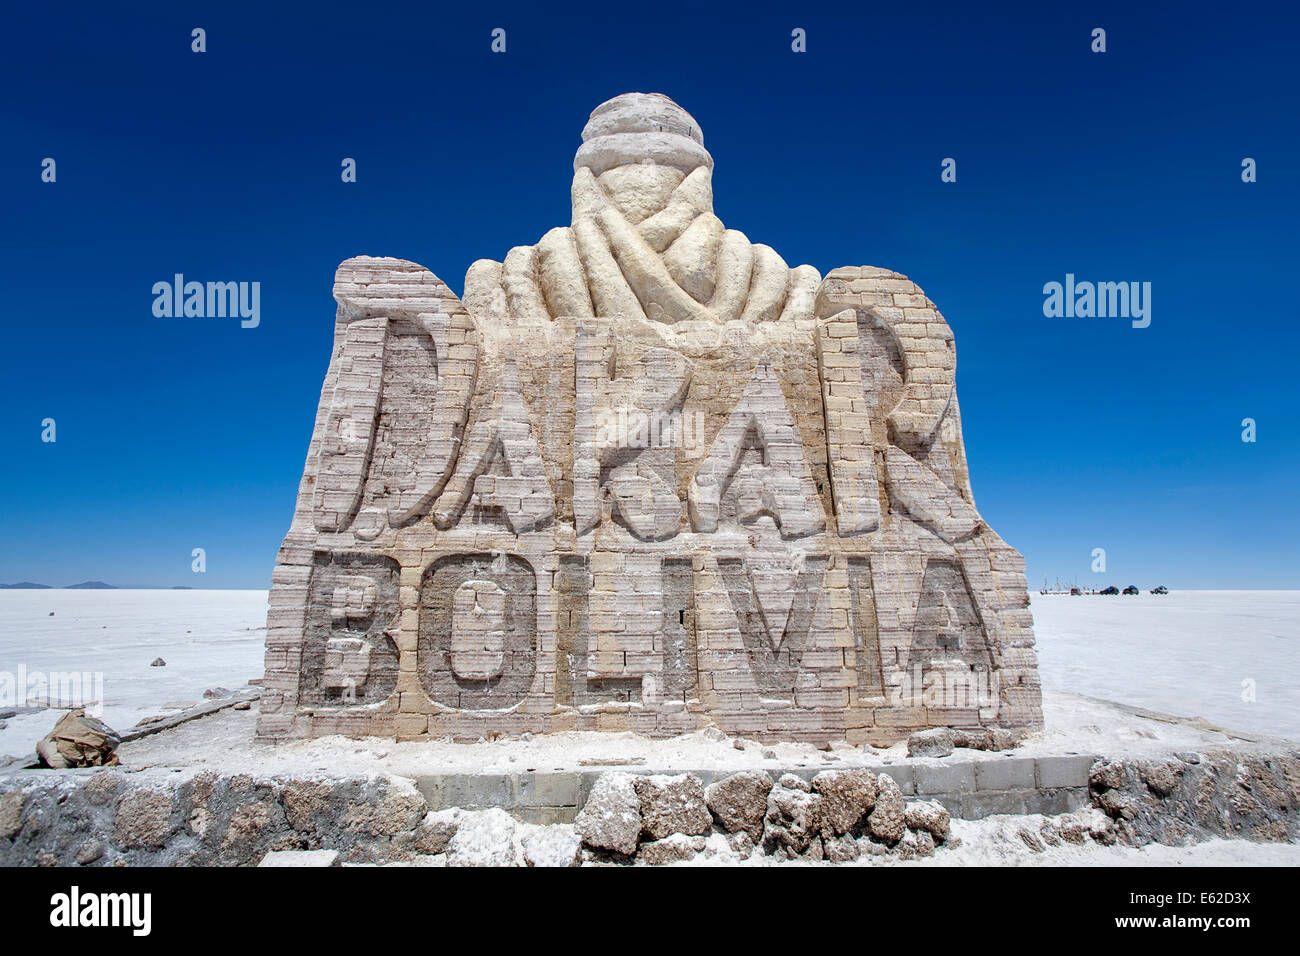 Denkmal von Ziegeln in Salz zum Gedenken an die Rallye Dakar 2013 gemacht. Salar de Uyuni. Bolivien Stockfoto